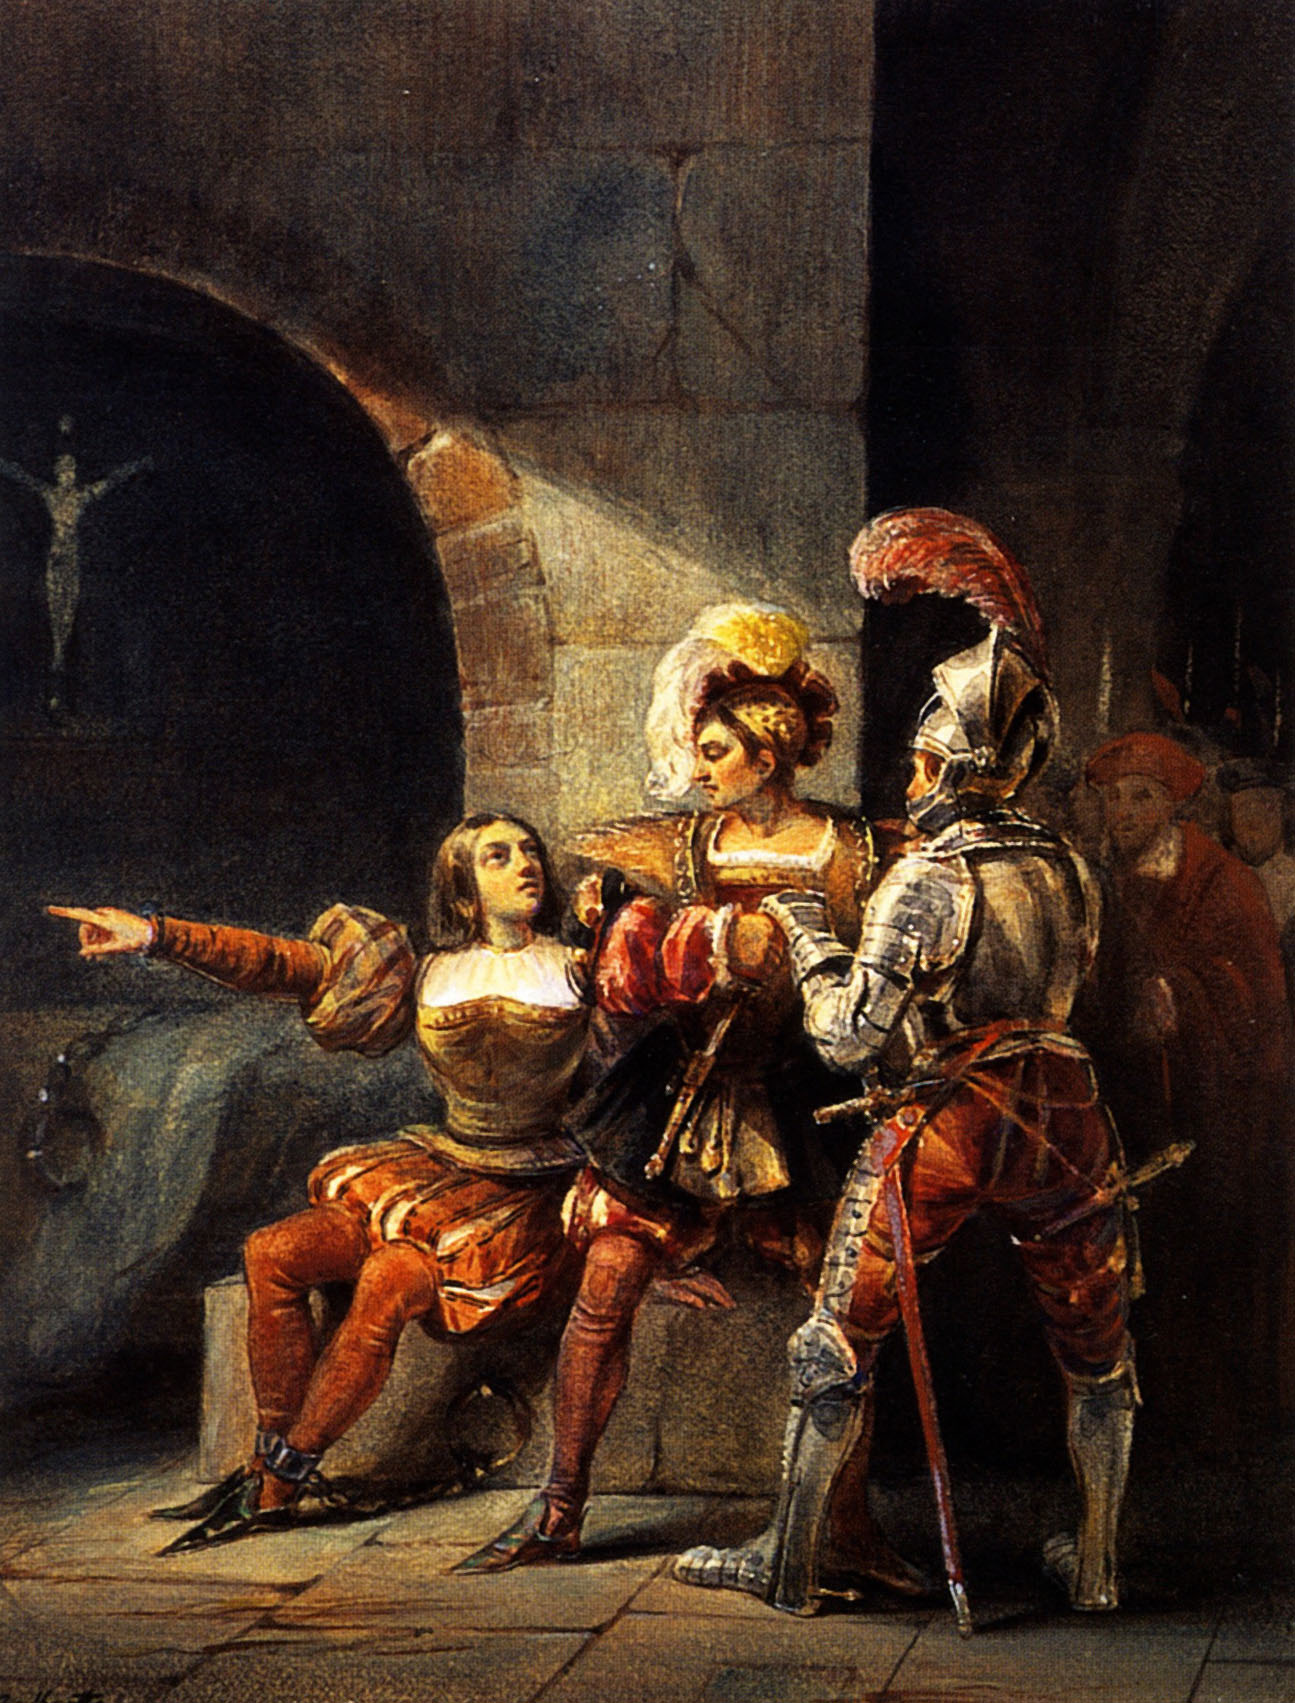 Неизвестный художник. "Заключение Жанны д'Арк под стражу". 1820-1830.